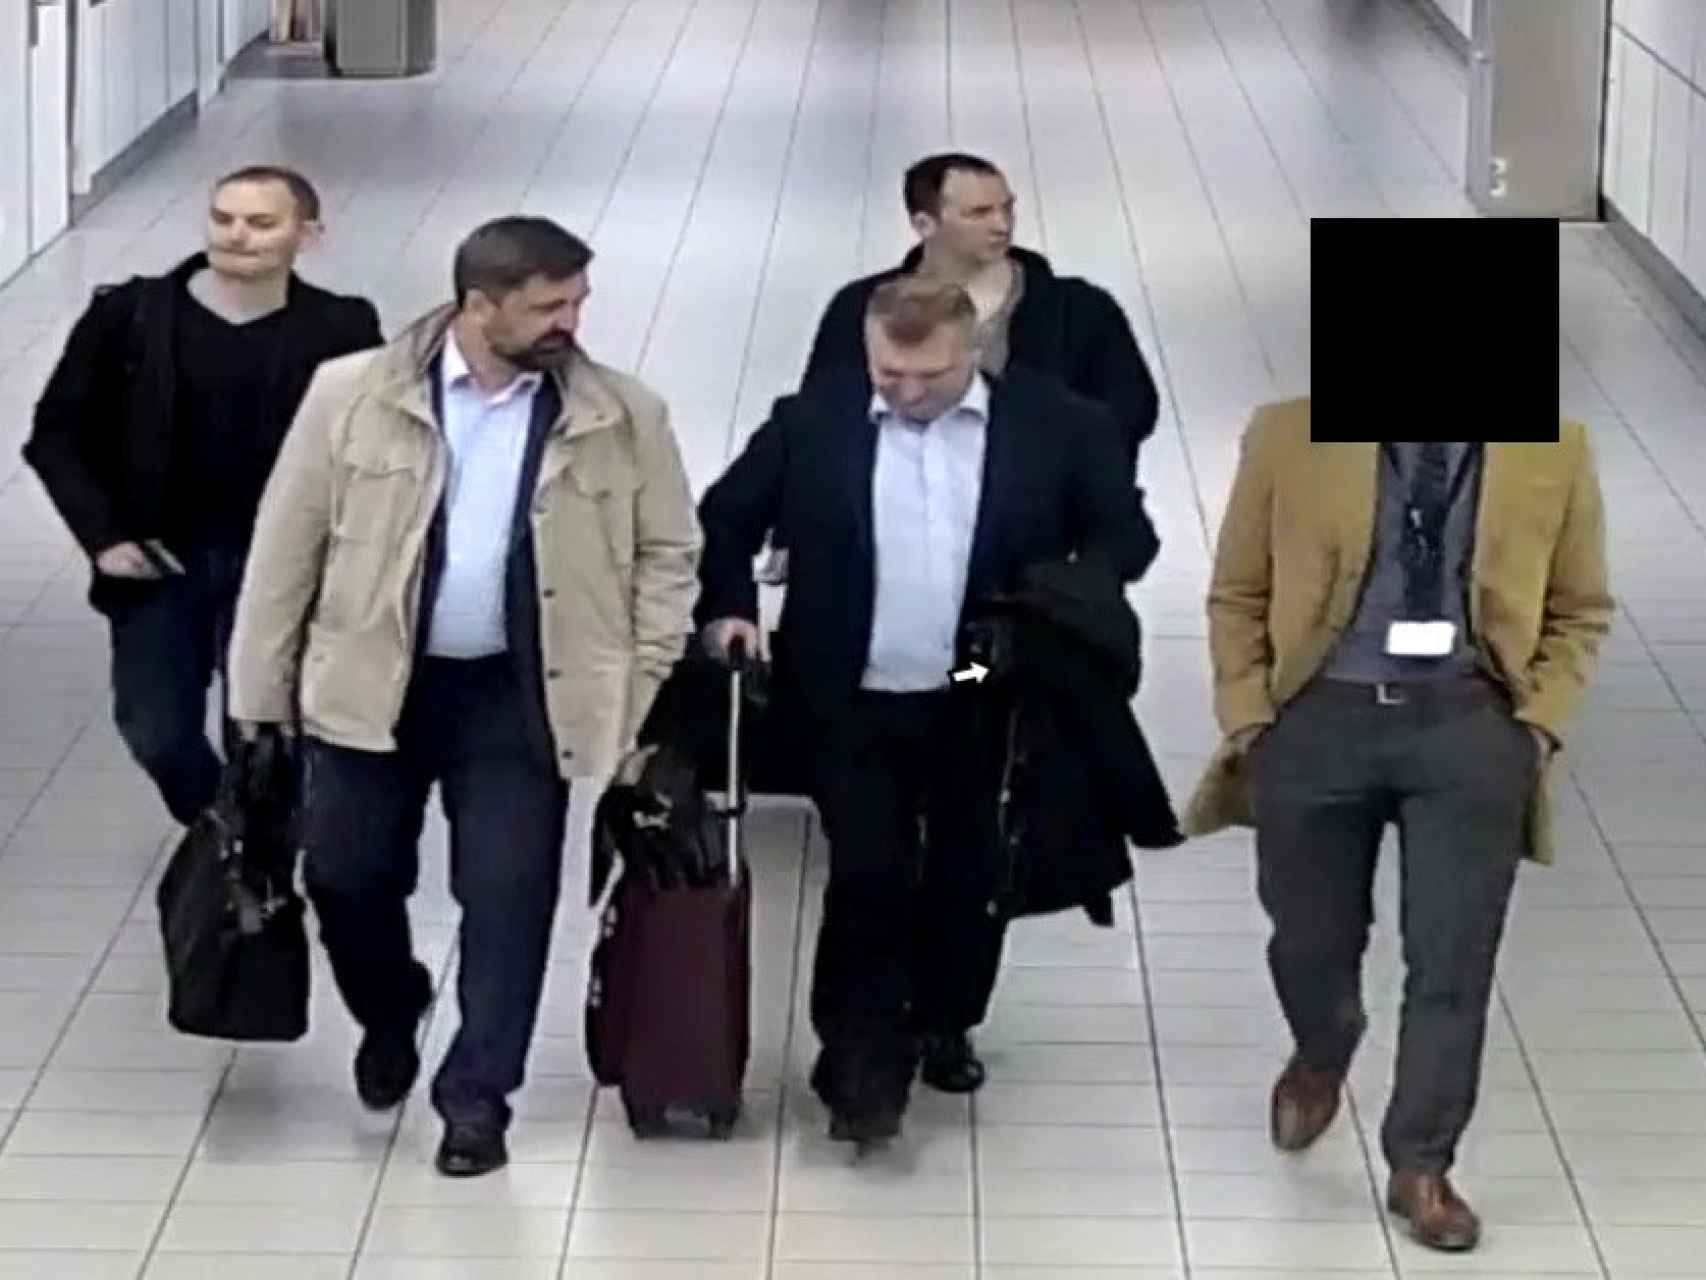 Los 4 ciudadanos rusos acusados de intento de ciberataque en La Haya